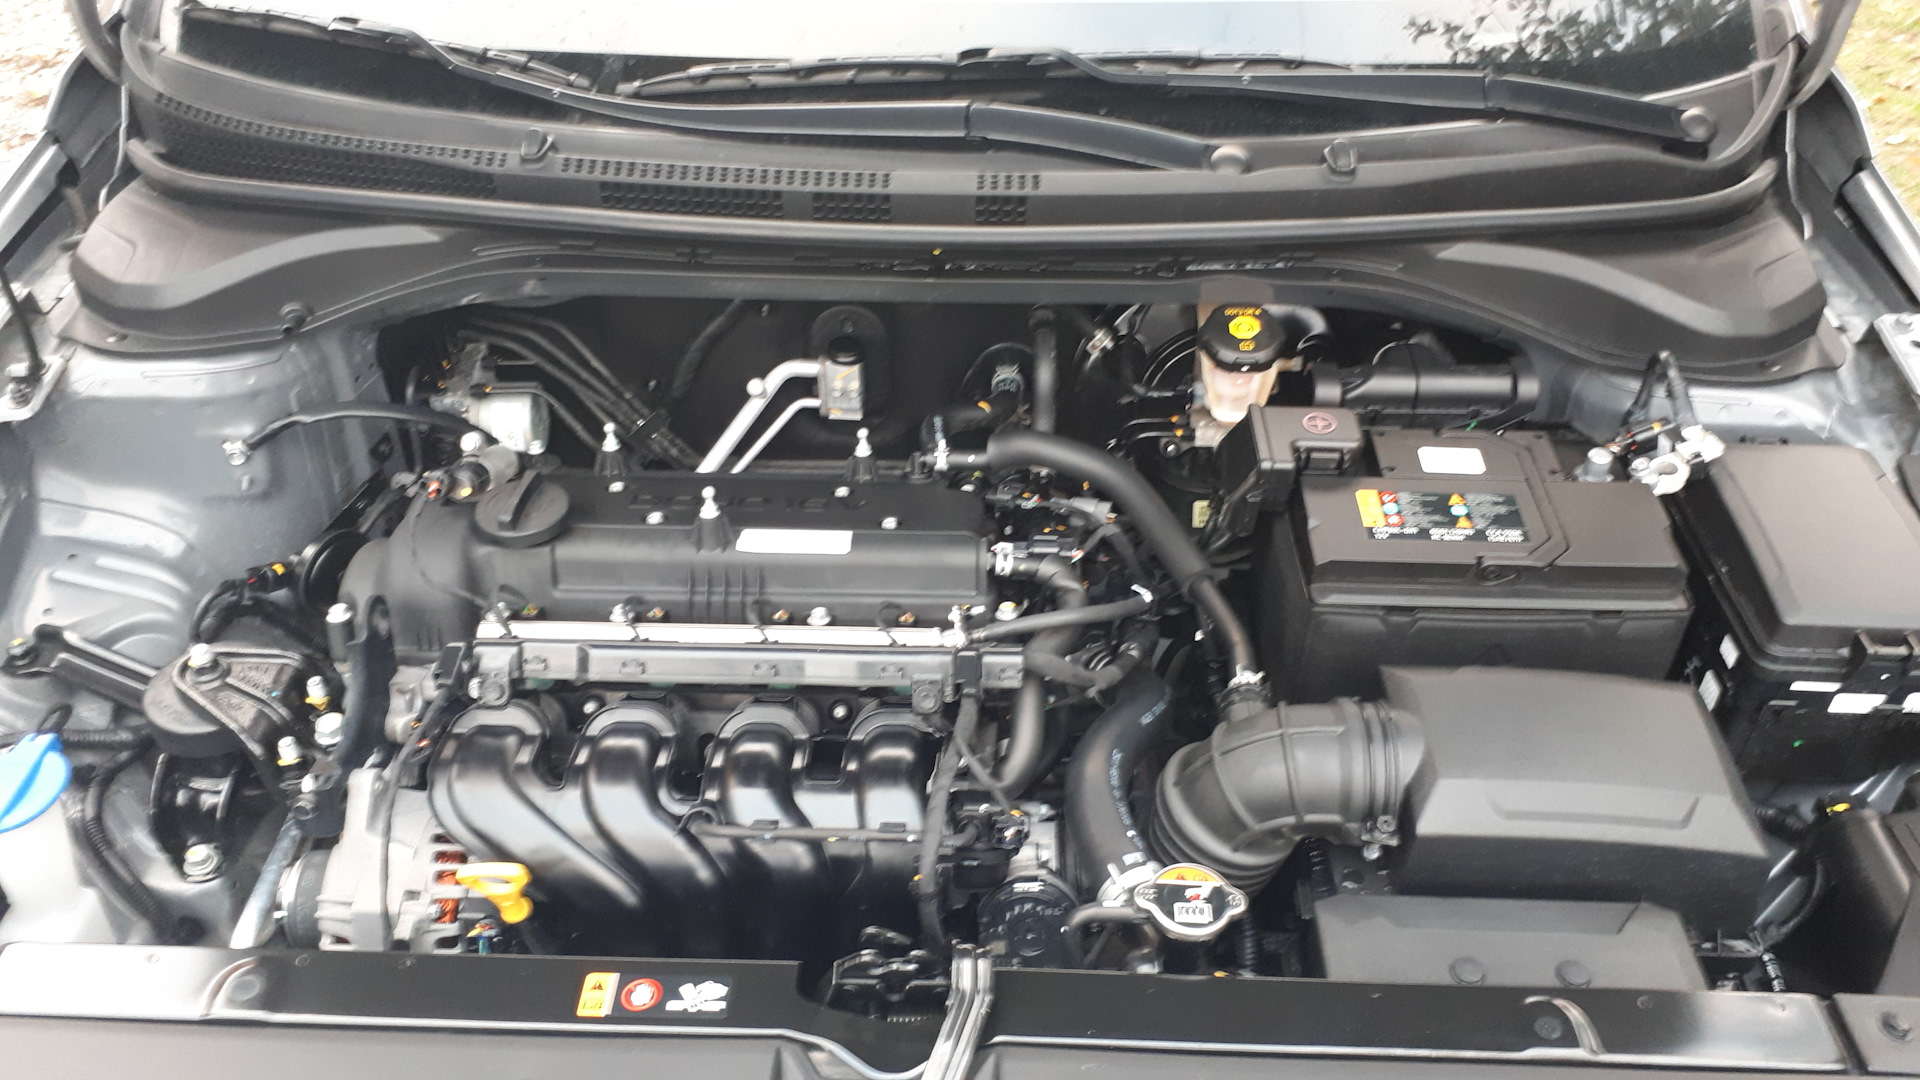 Двигатель g4ee hyundai, kia, технические характеристики, какое масло лить, ремонт двигателя g4ee, доработки и тюнинг, схема устройства, рекомендации по обслуживанию